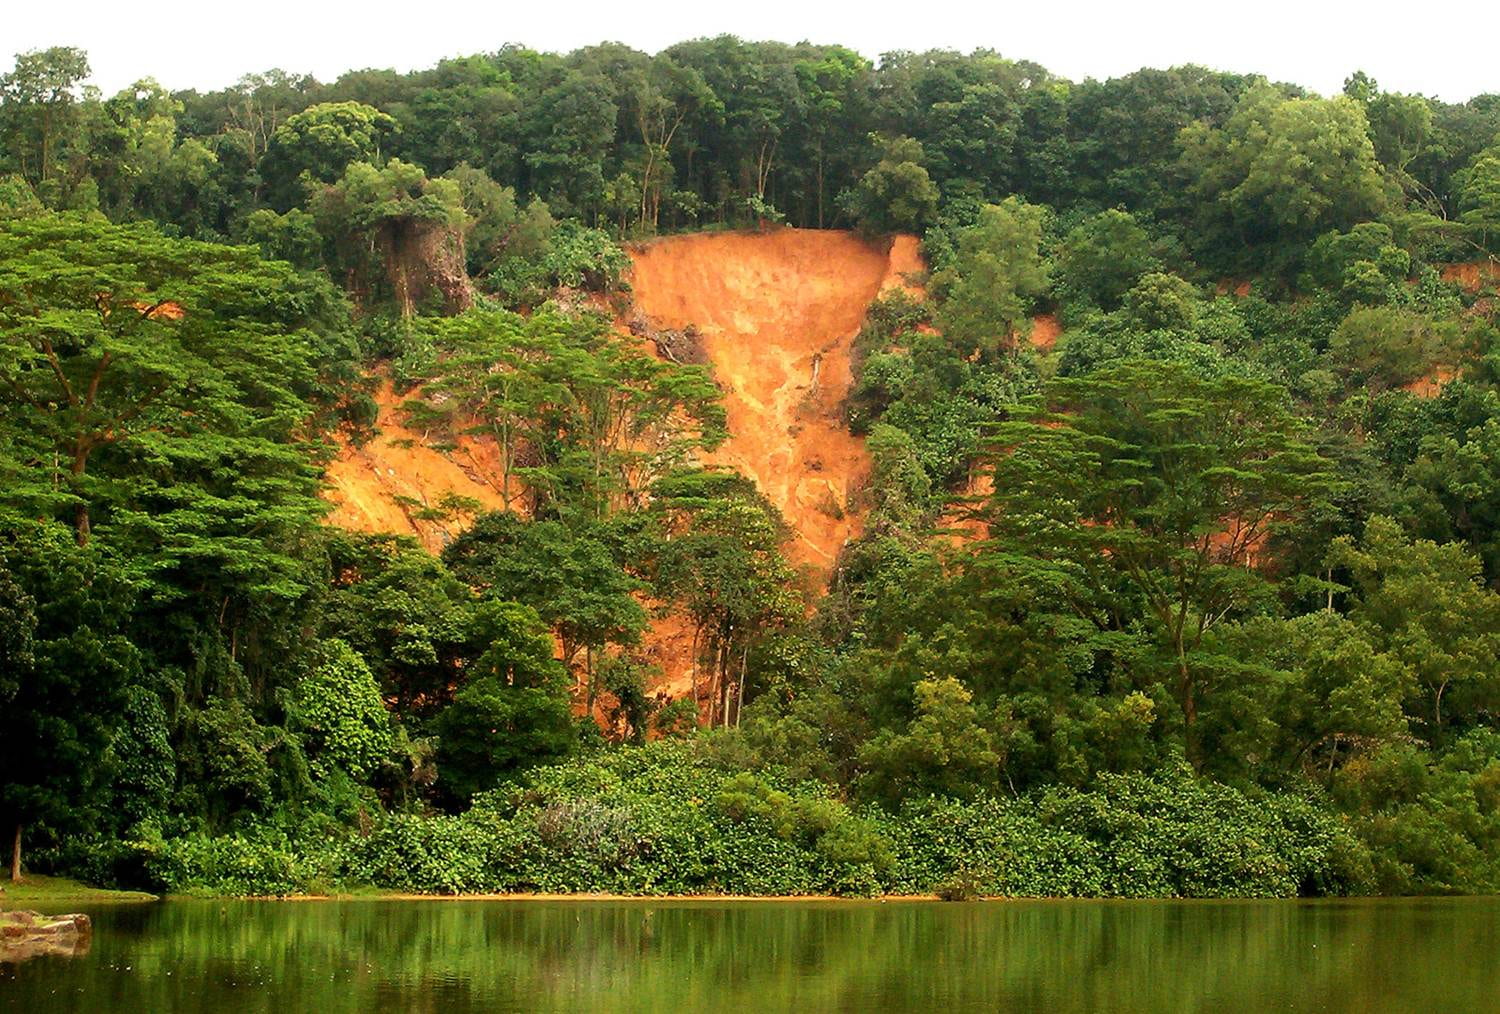 Slope failure at Bukit Batok, Singapore (2006), Rahardjo et al 2007